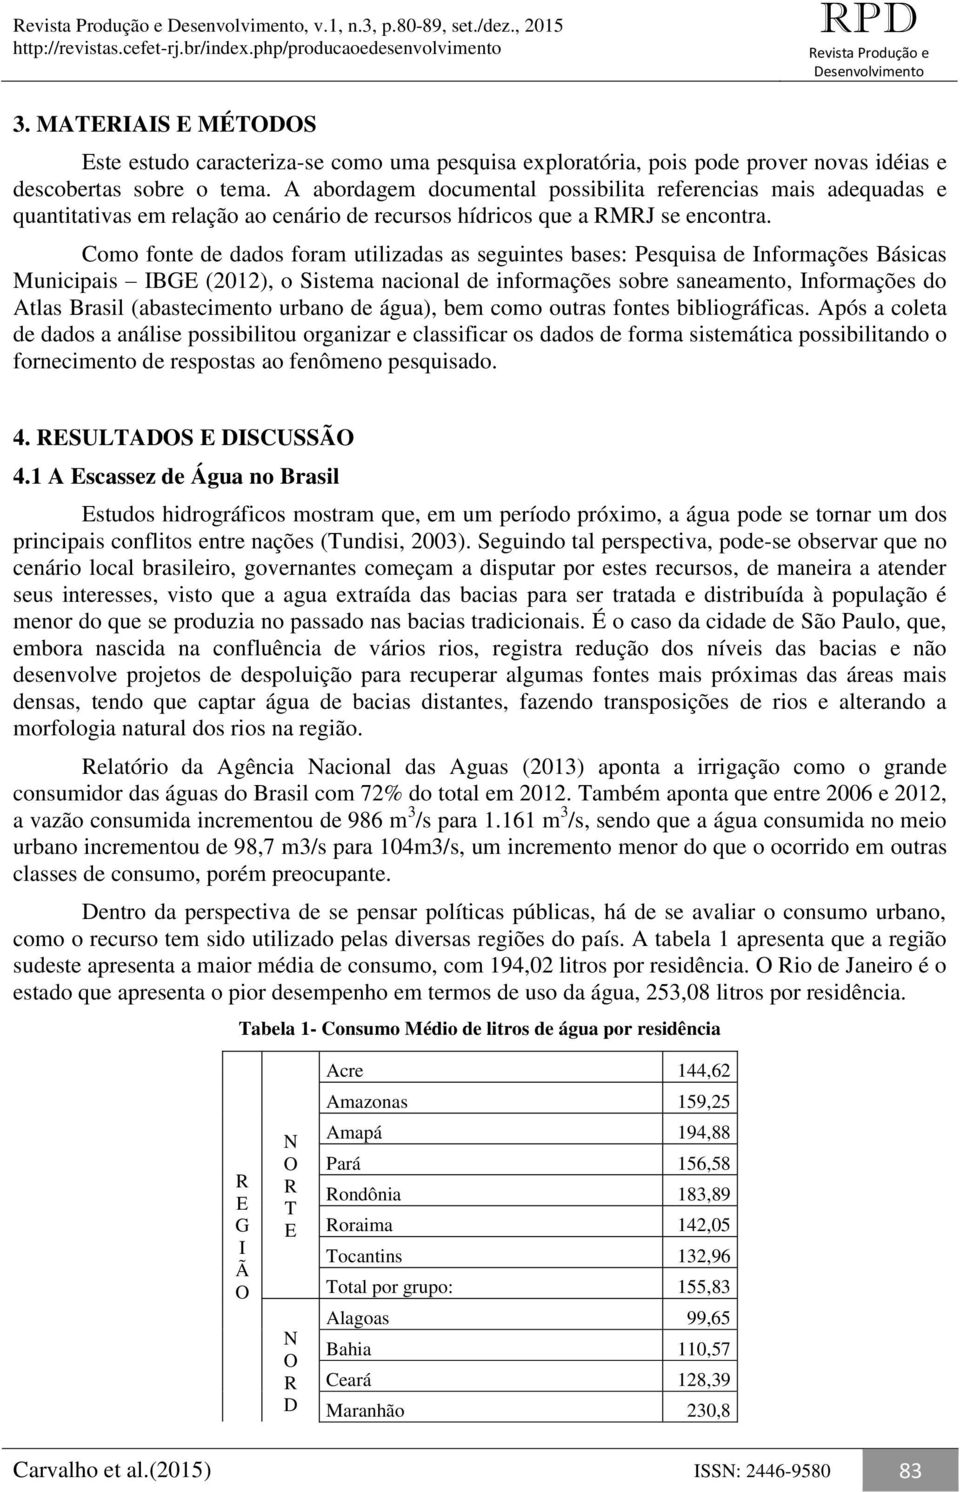 Como fonte de dados foram utilizadas as seguintes bases: Pesquisa de Informações Básicas Municipais IBG (2012), o Sistema nacional de informações sobre saneamento, Informações do Atlas Brasil